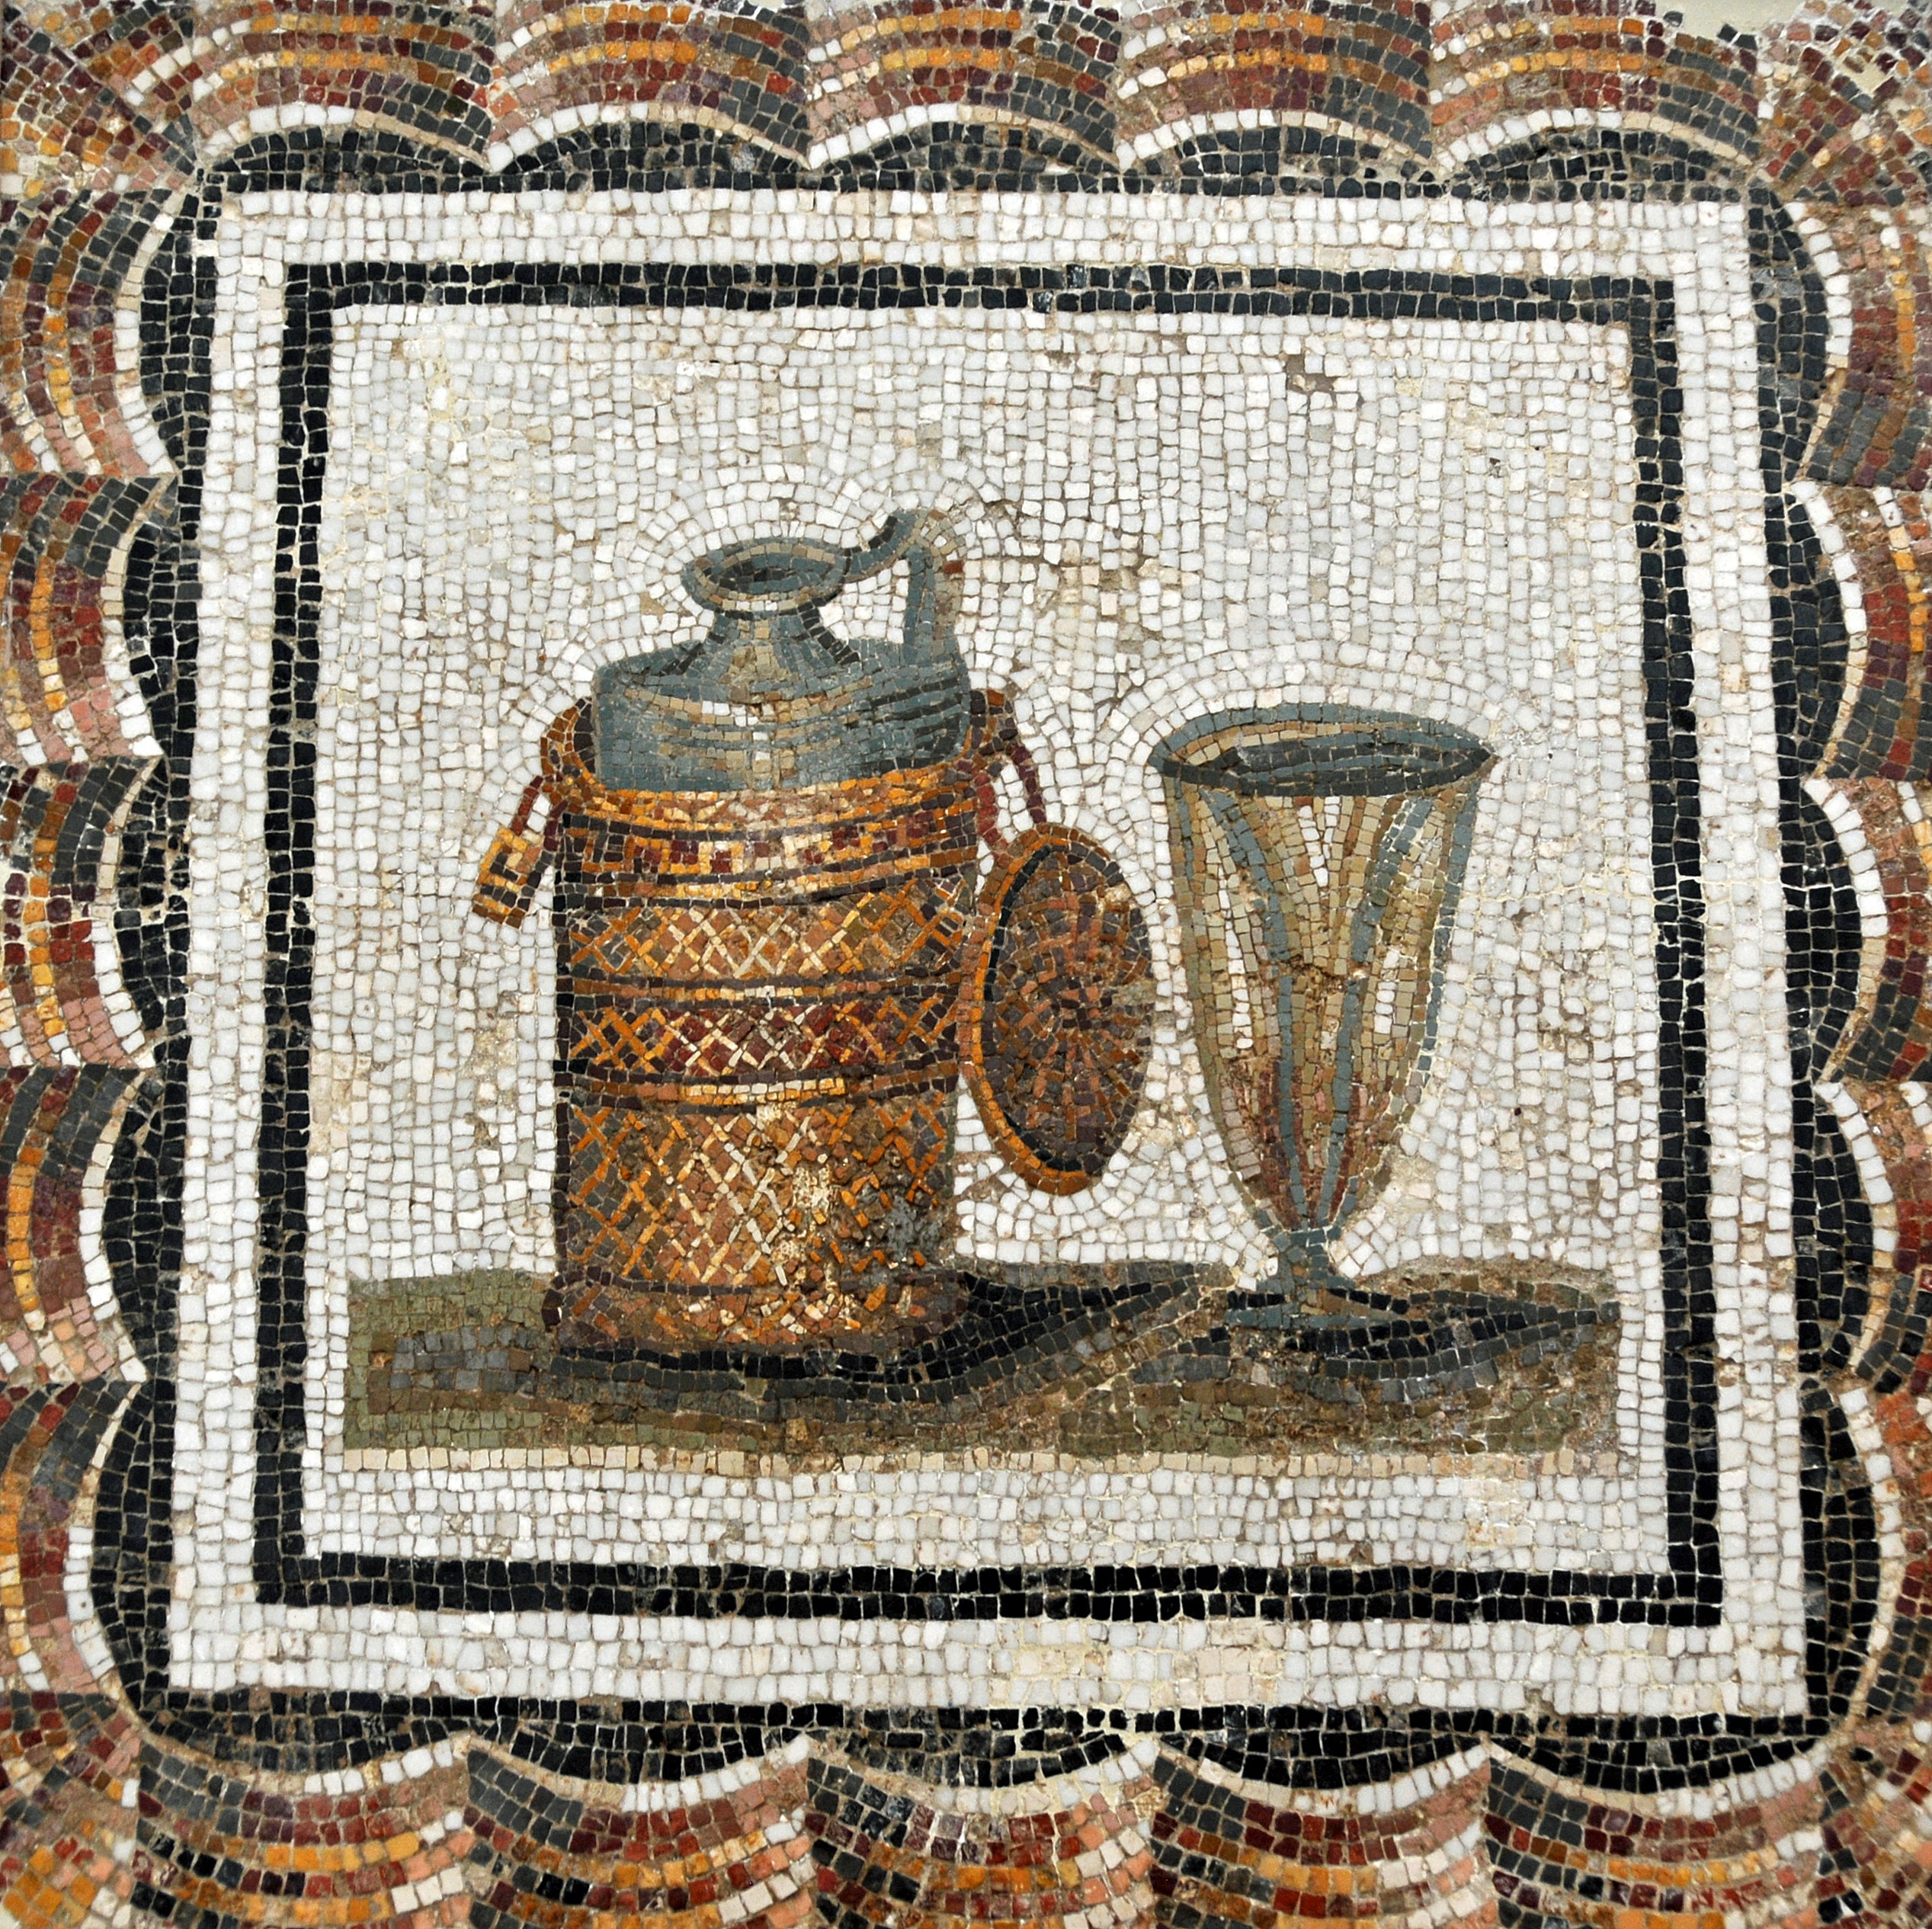 Boros vagy ecetes flaska és a fogyasztásához rendelt pohár egy ókori római mozaikon